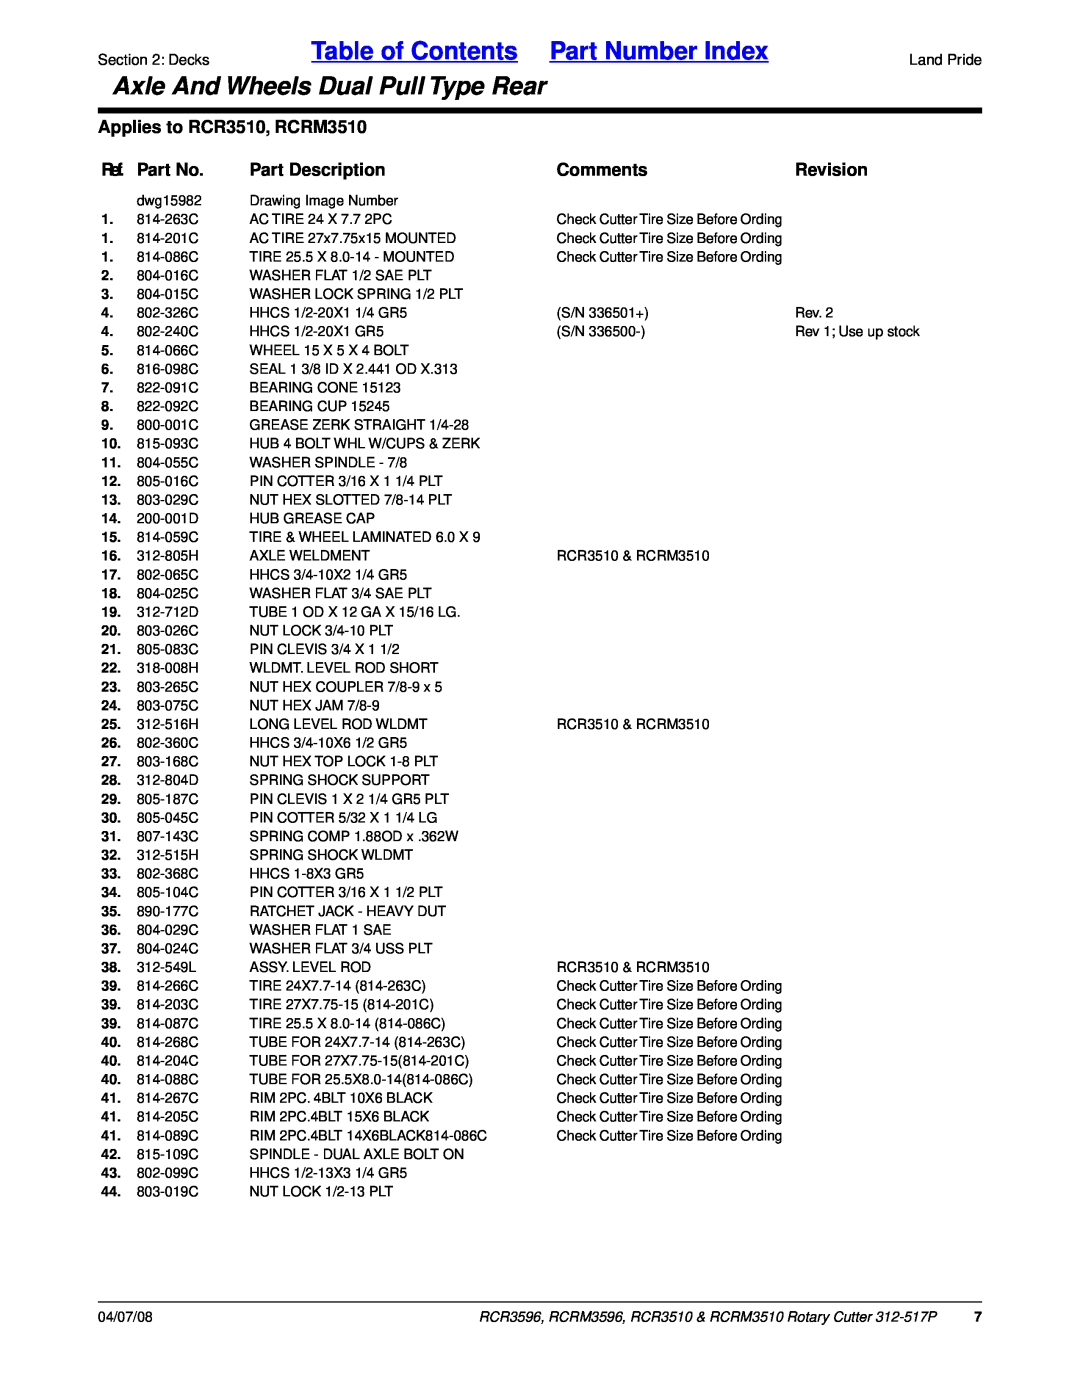 Land Pride RCR3596, RCR3510 manual Ref. Part No, Part Description, Comments, Revision, Table of Contents Part Number Index 